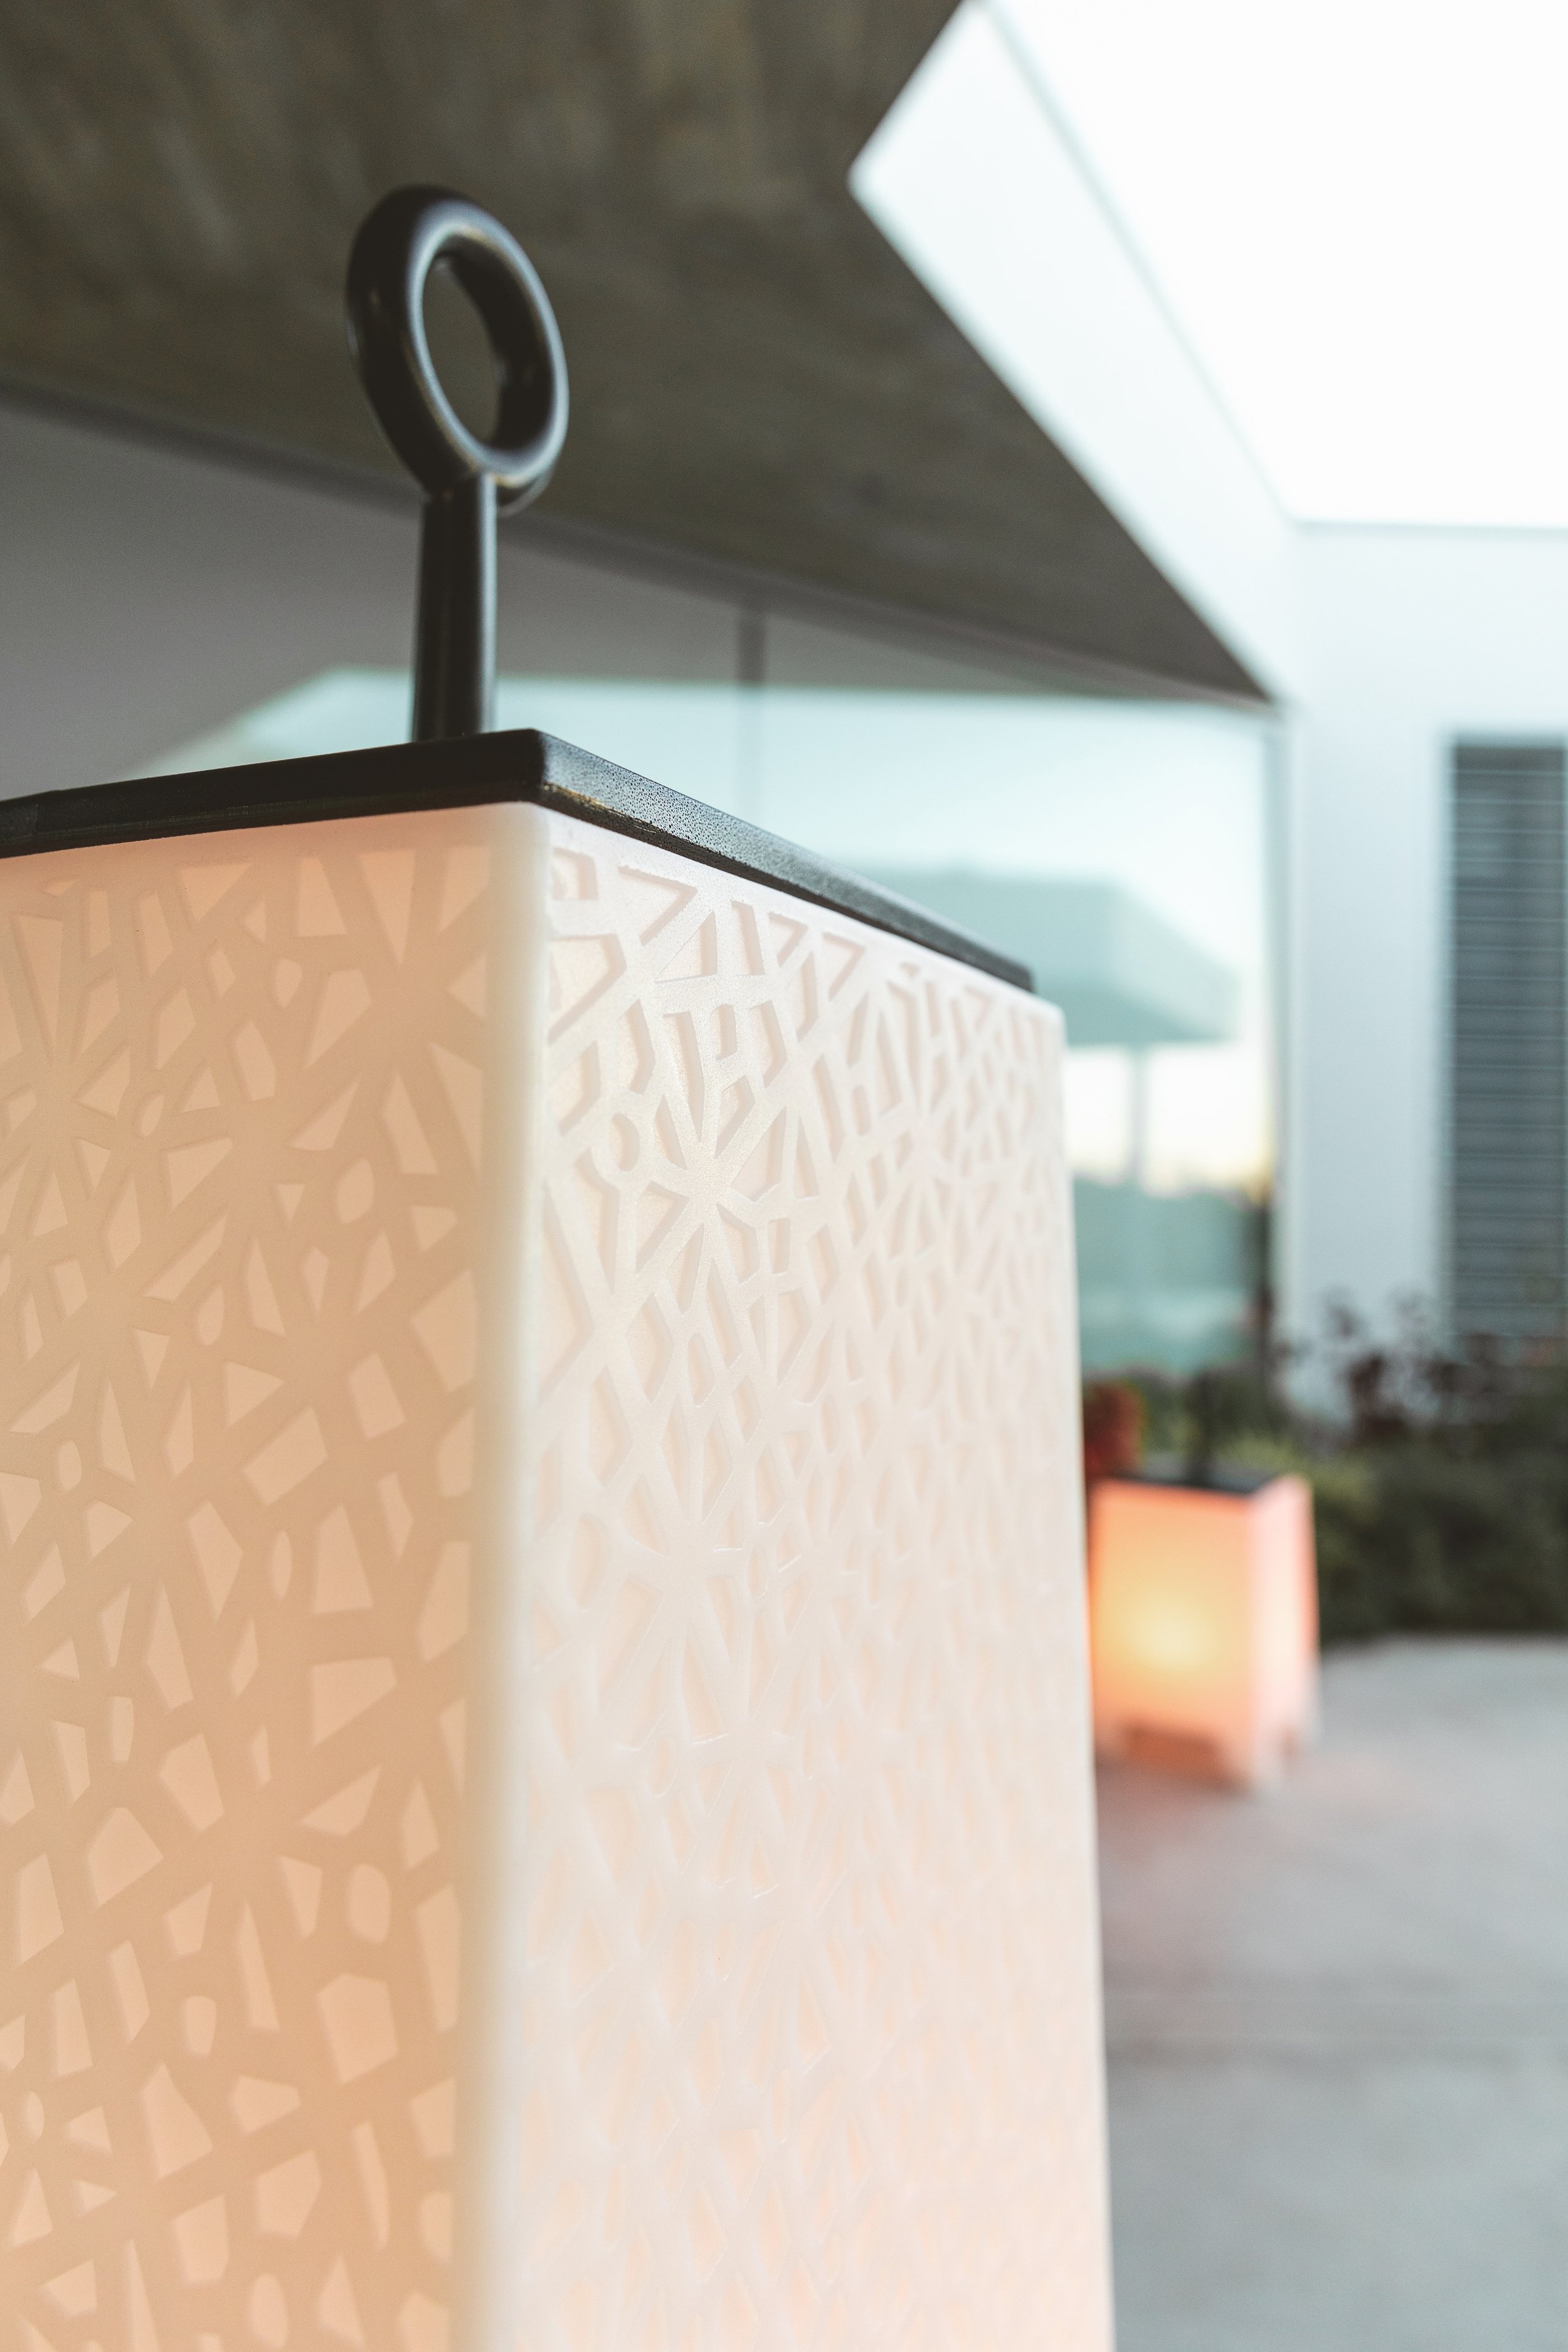 Detalle de la lampara mora exterior diseñada por Javier Mariscal producida por Vondom